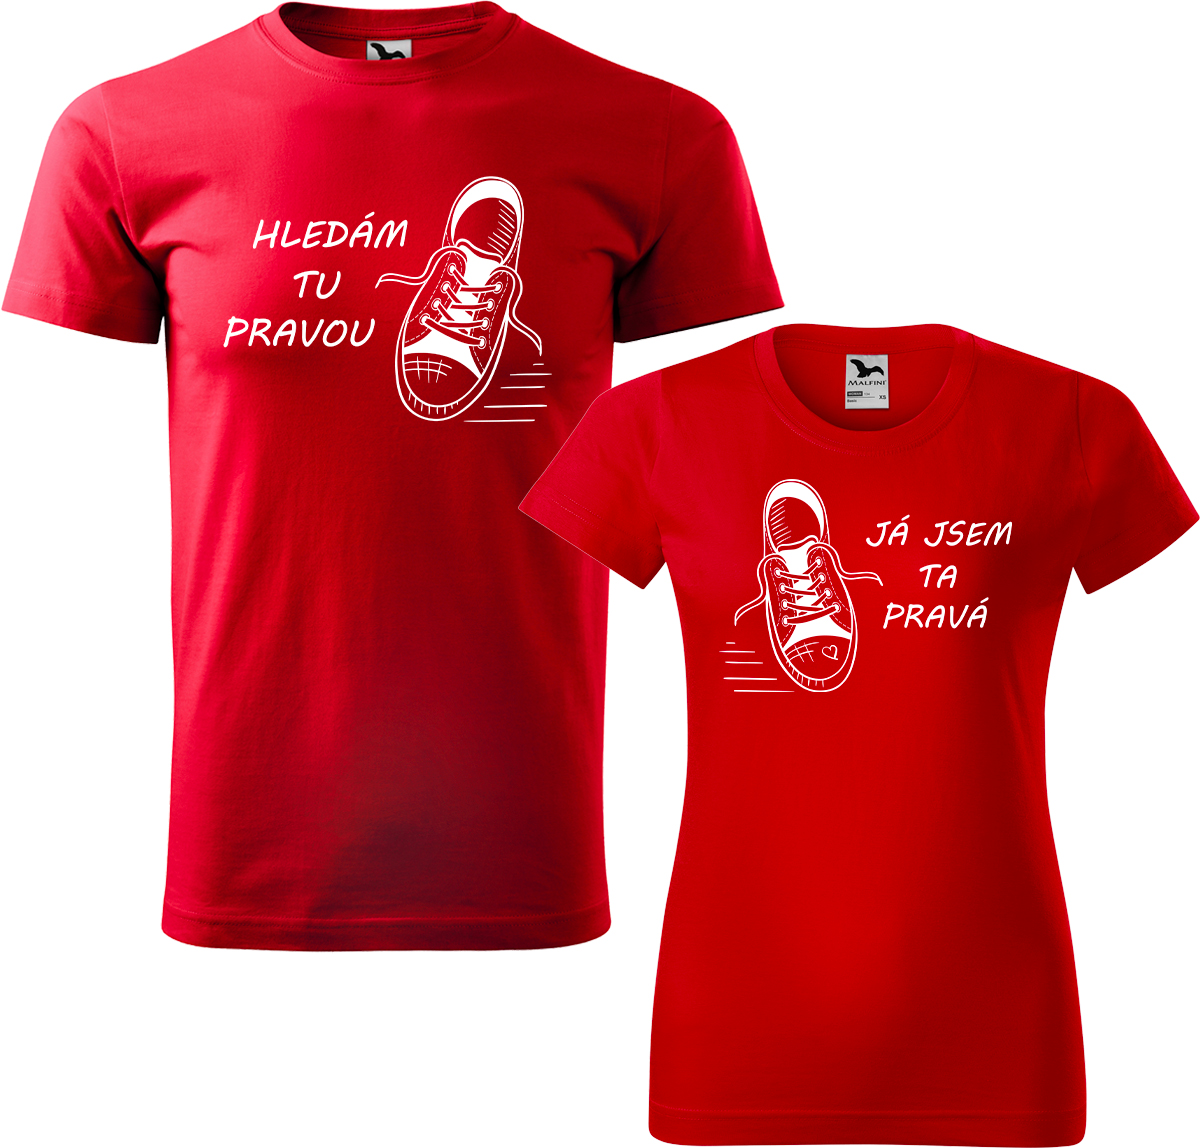 Trička pro páry - Kecky Barva: Červená (07), Velikost dámské tričko: S, Velikost pánské tričko: 3XL